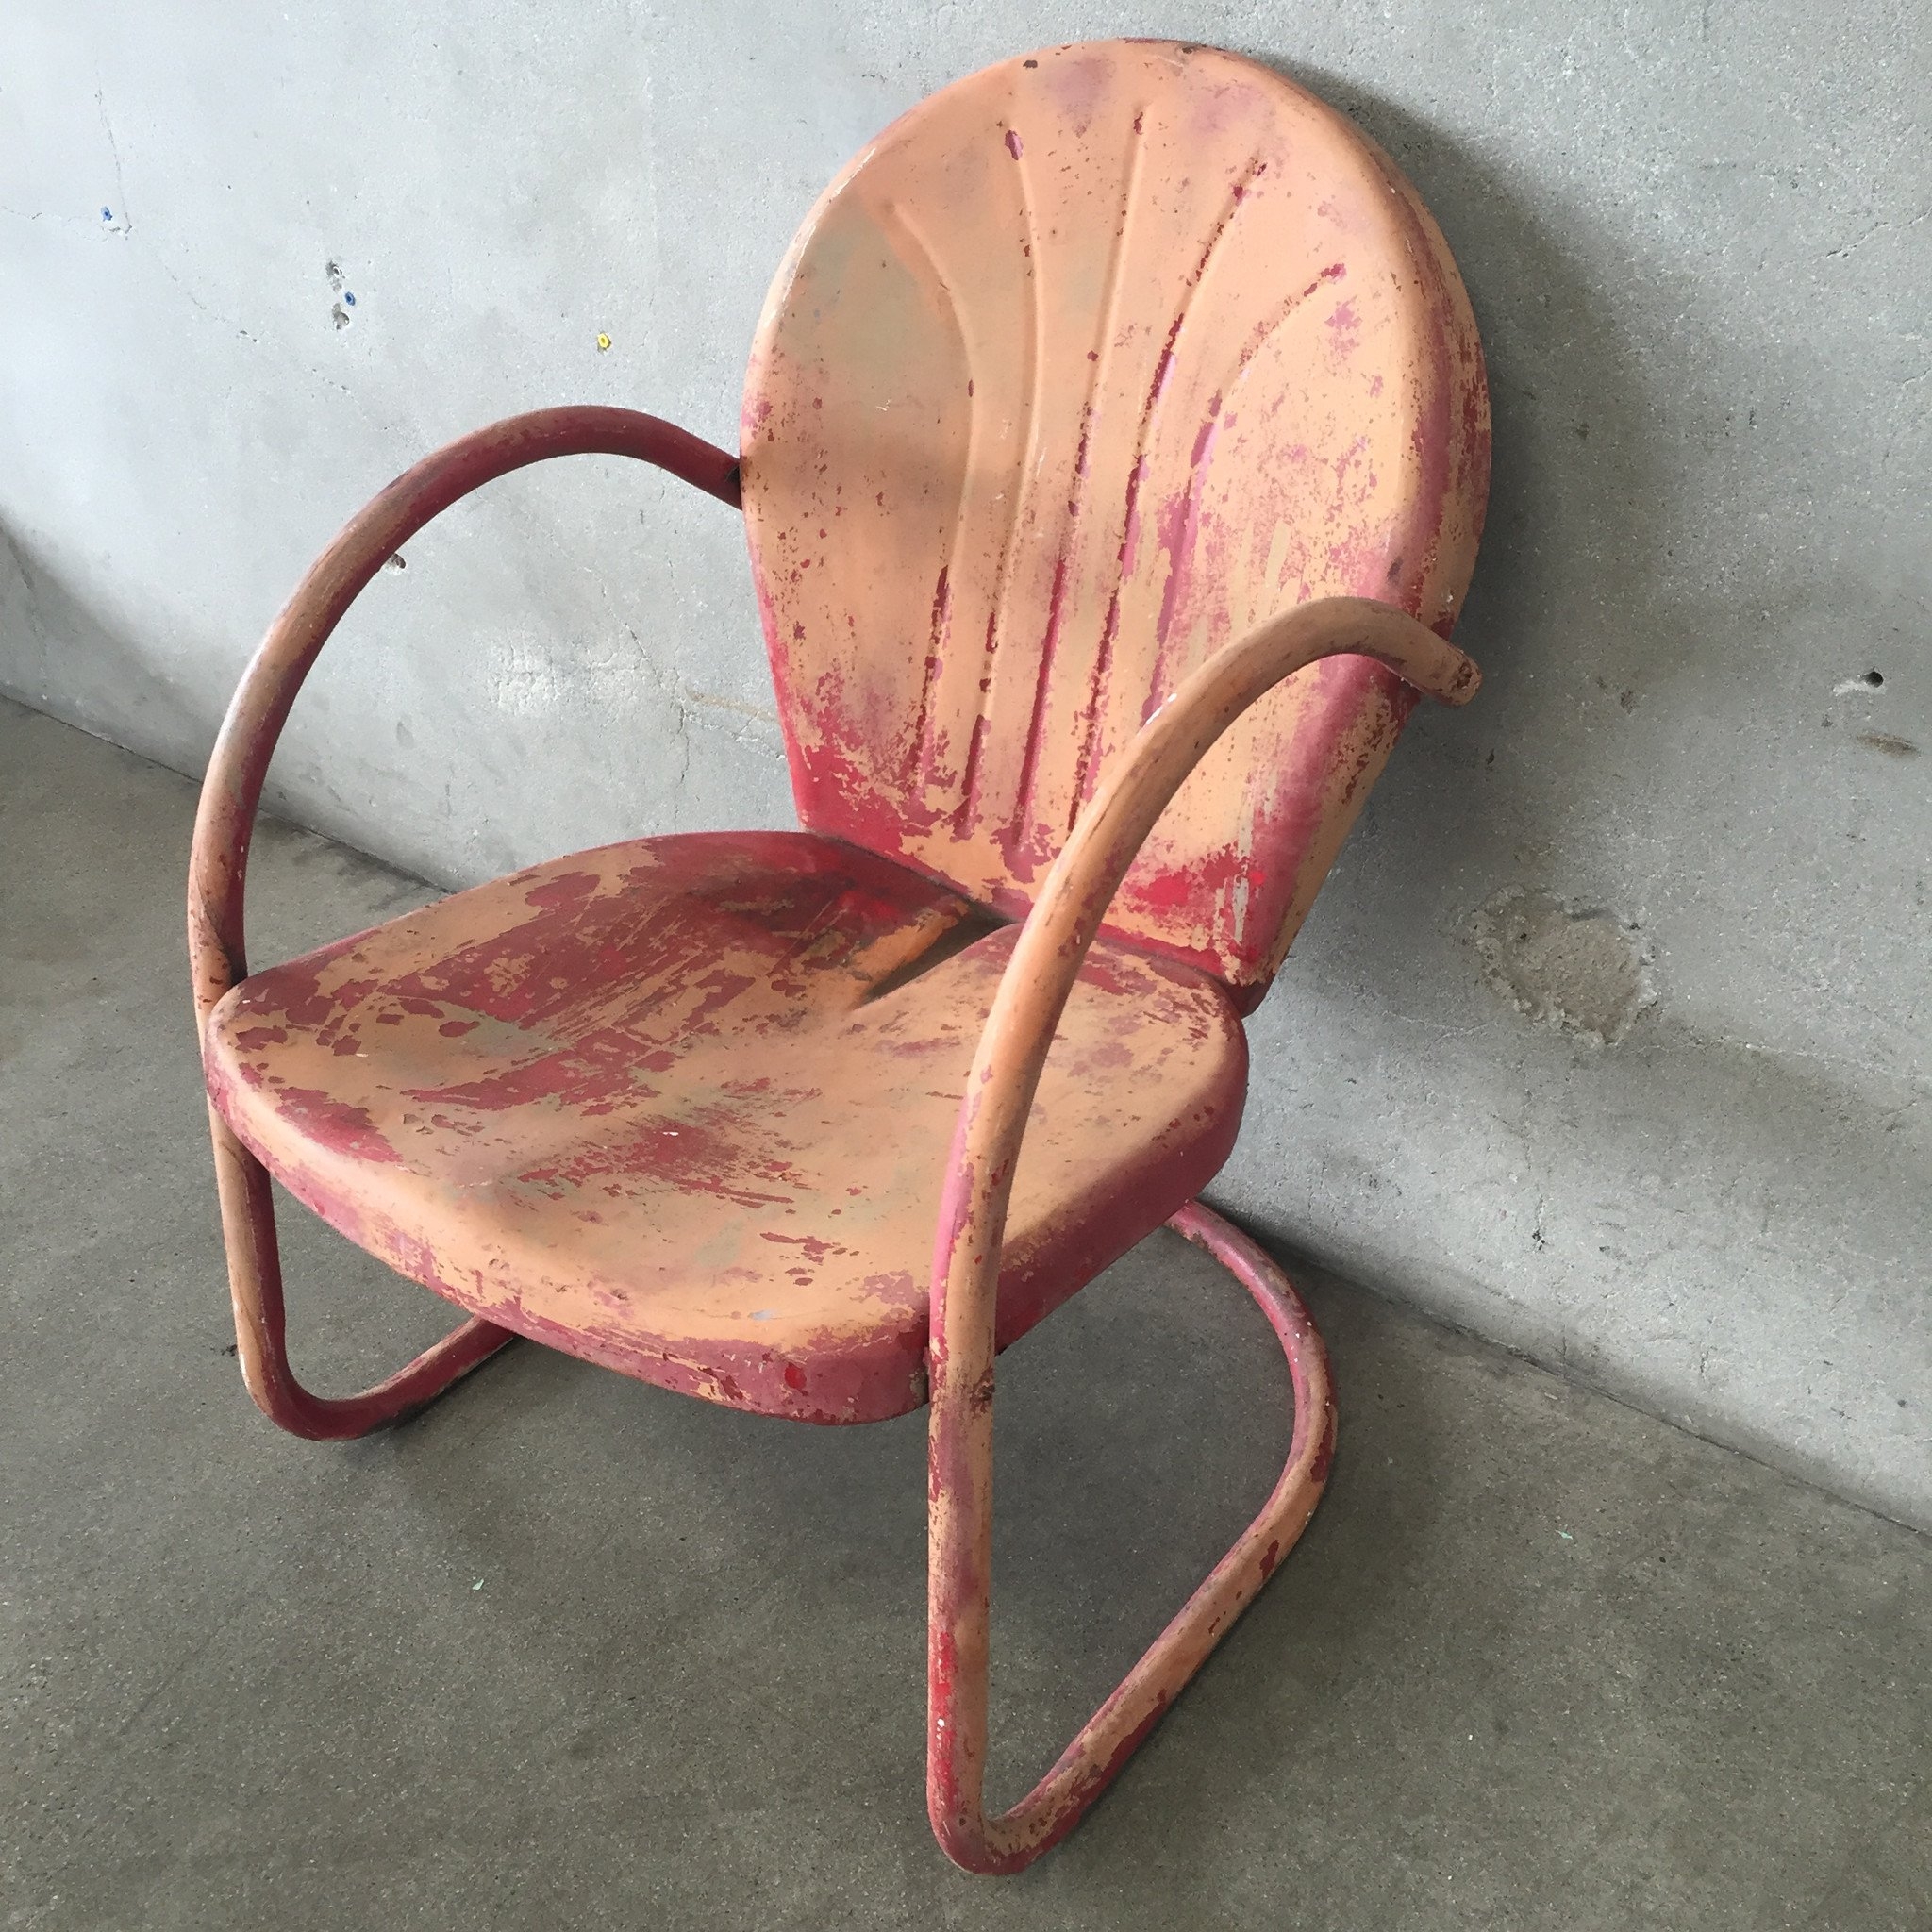 Vintage Metal Lawn Chairs Visualhunt, Vintage Metal Chairs Outdoor